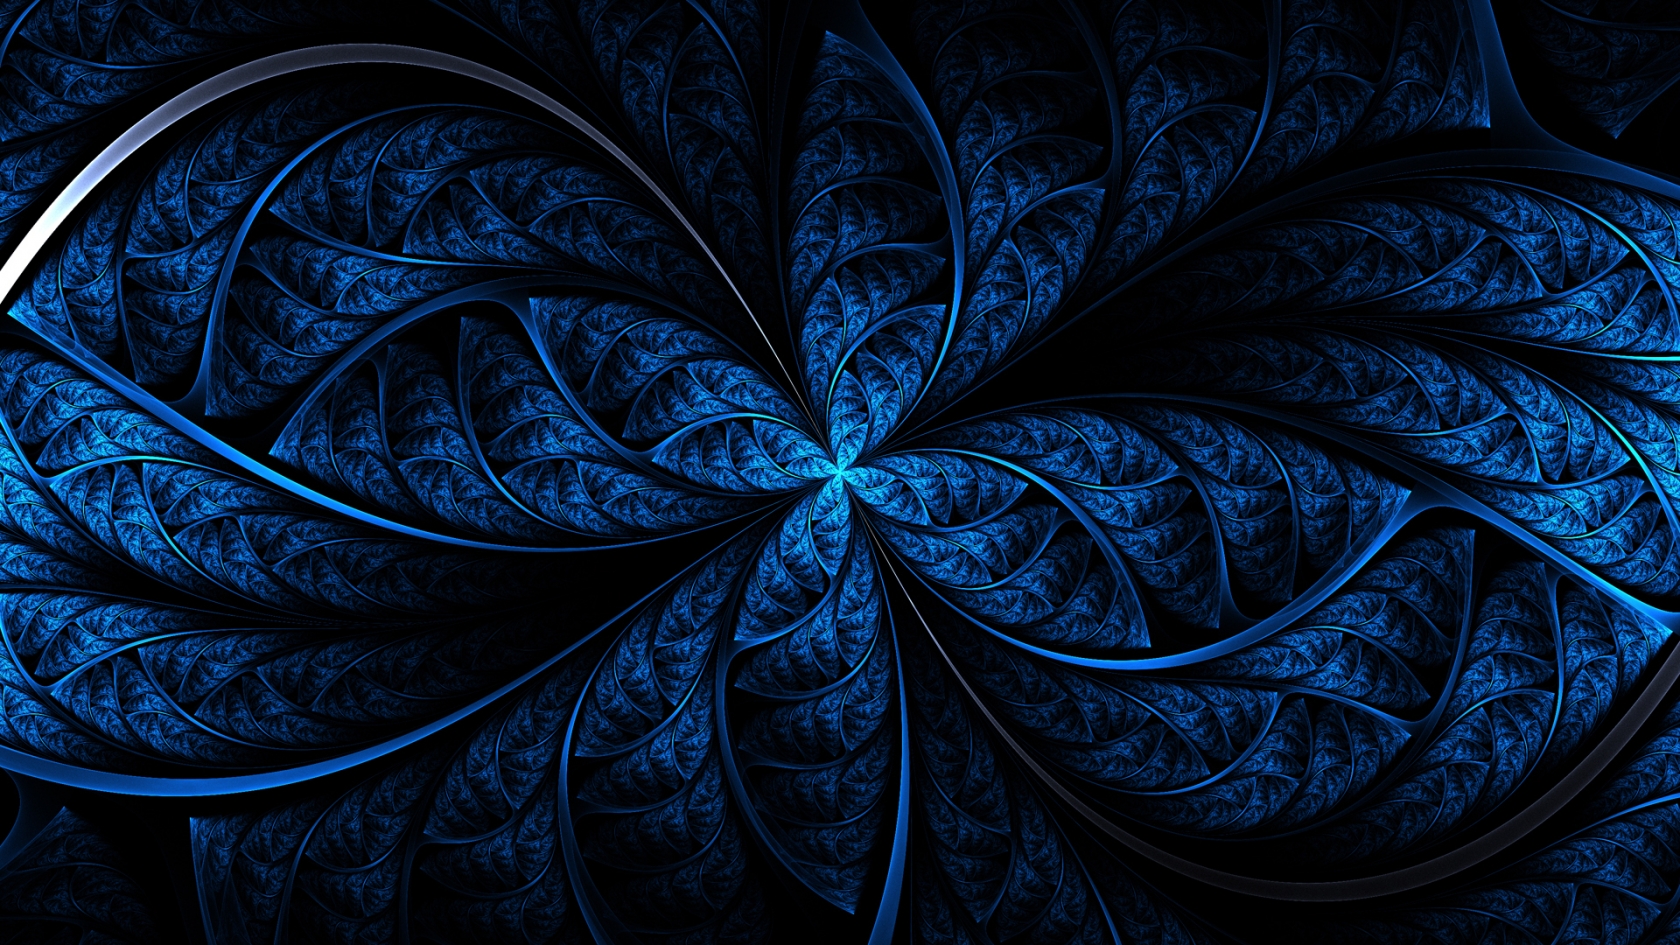 Blue Art for 1680 x 945 HDTV resolution